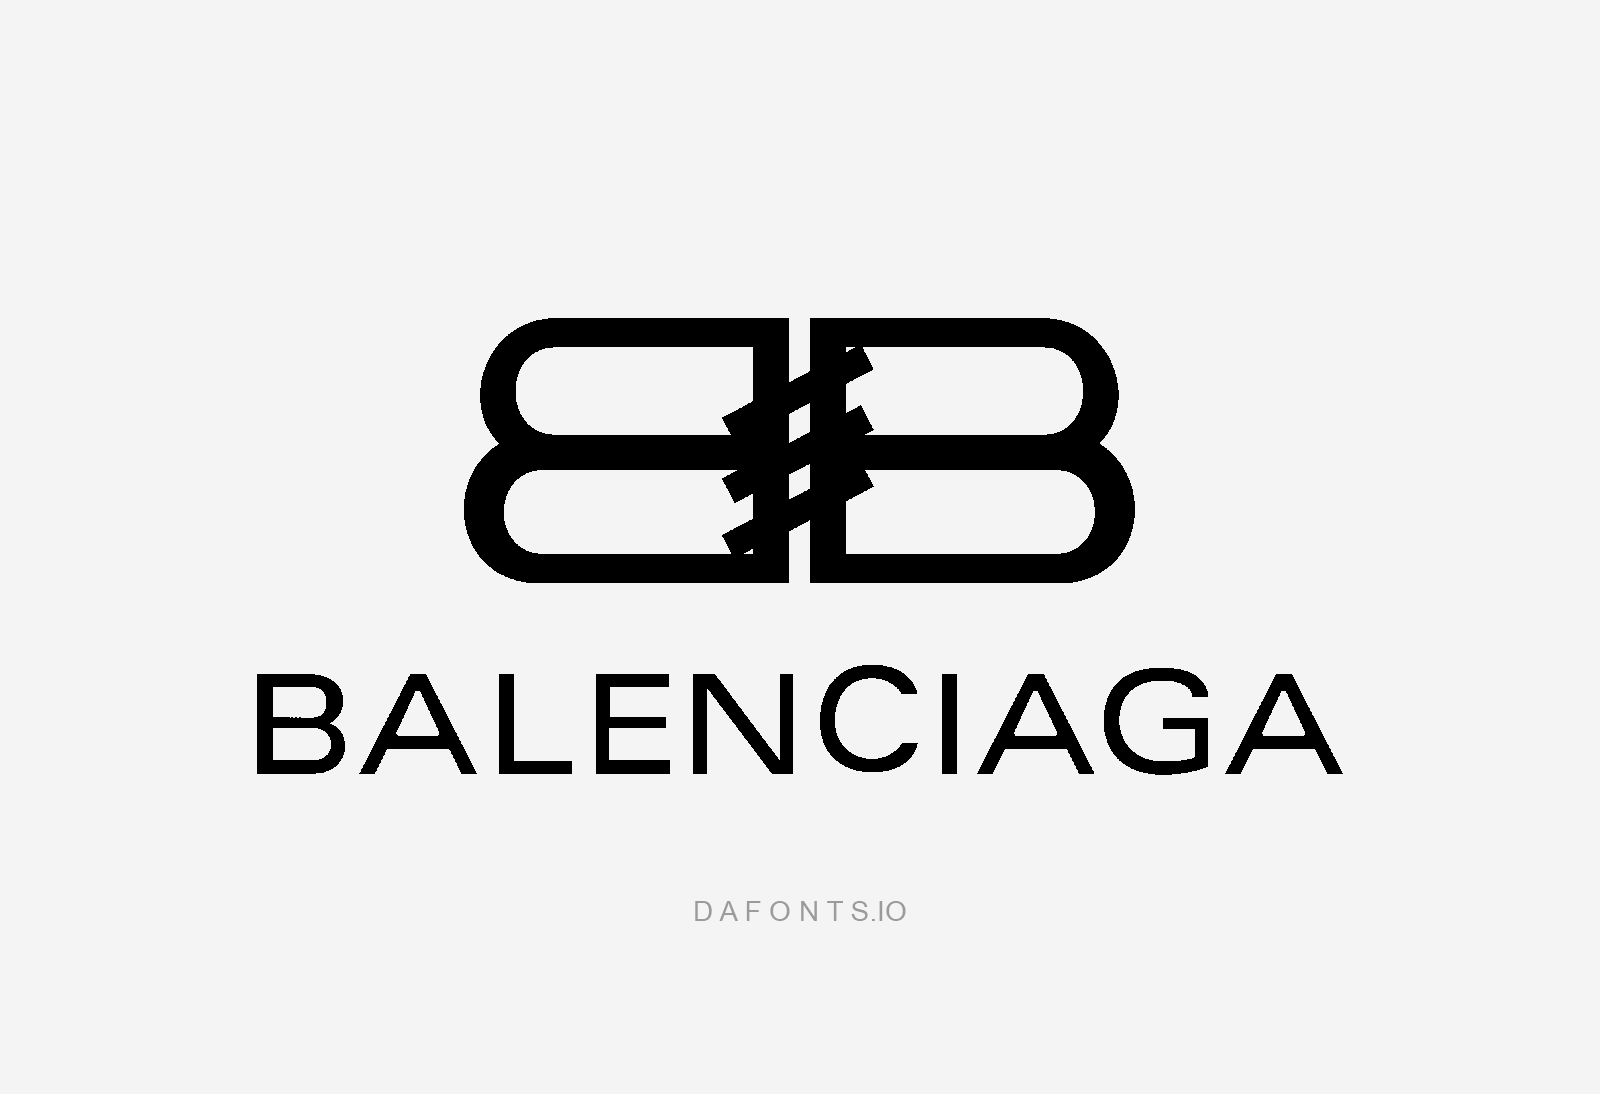 Balenciaga Font